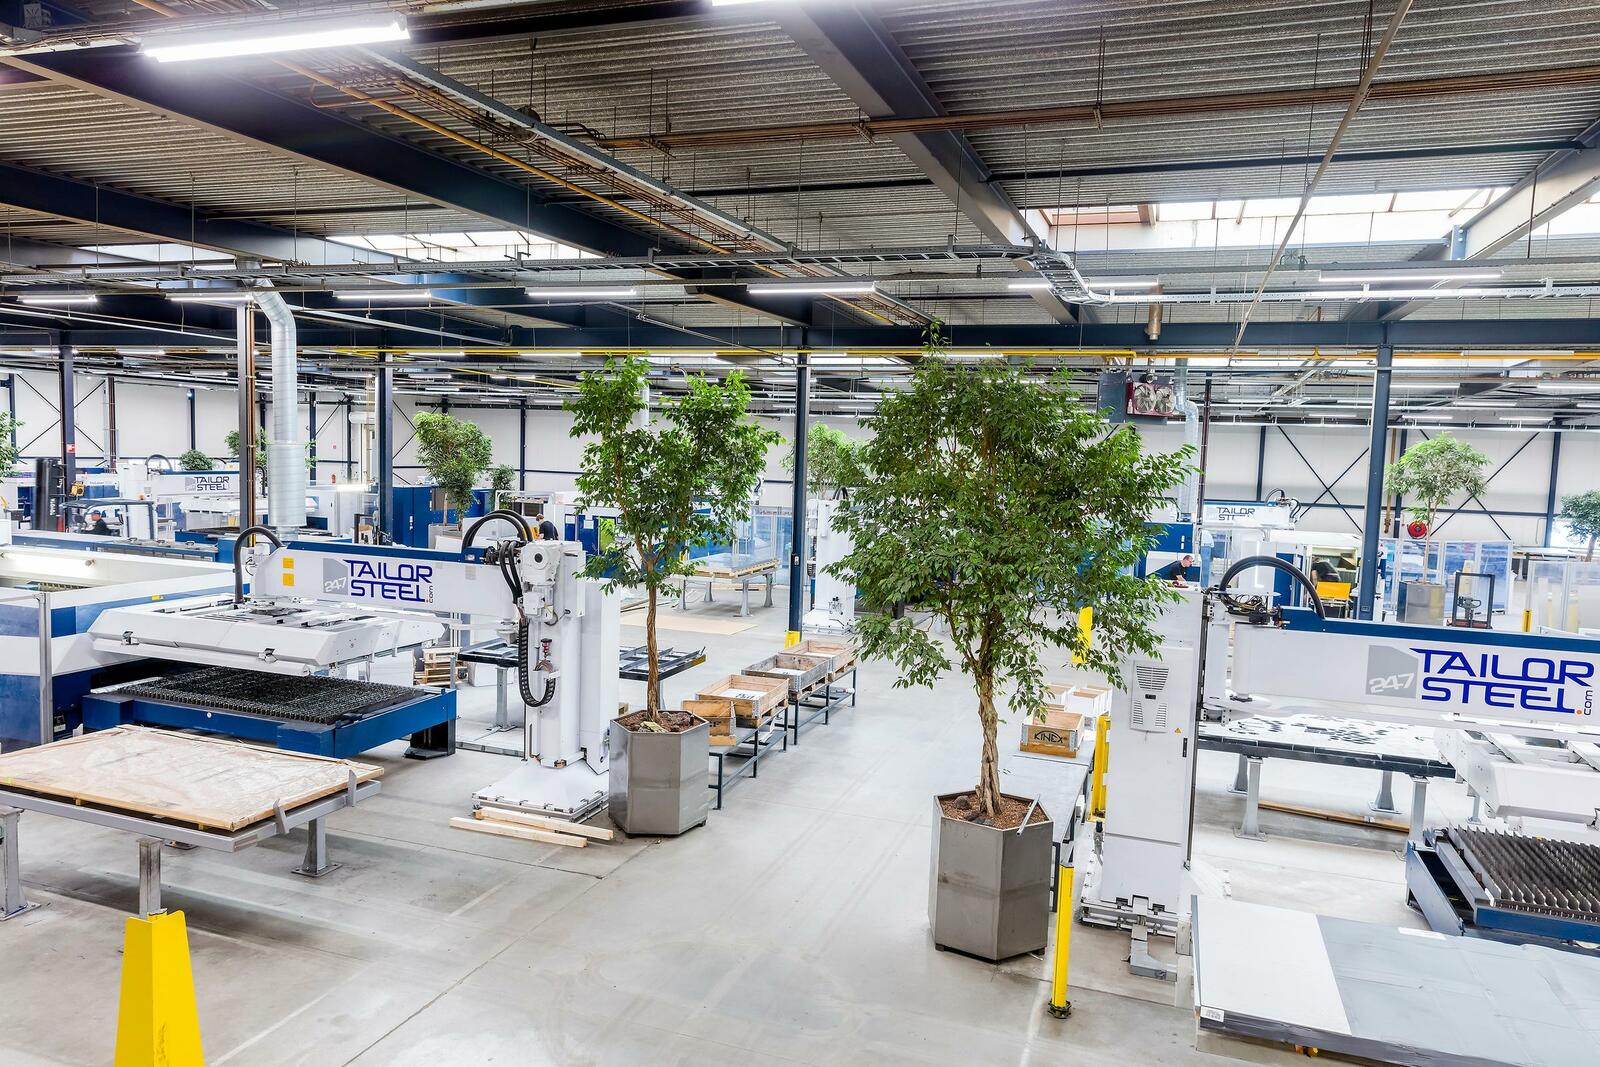 Die smarte Fabrik von 247 Tailor Steel in den Niederlanden. Auch in Deutschland hat das Unternehmen nun drei Standorte und ermöglicht die digitale Bestellung von Blechbauteilen, schnell und mit hoher Liefertreue.